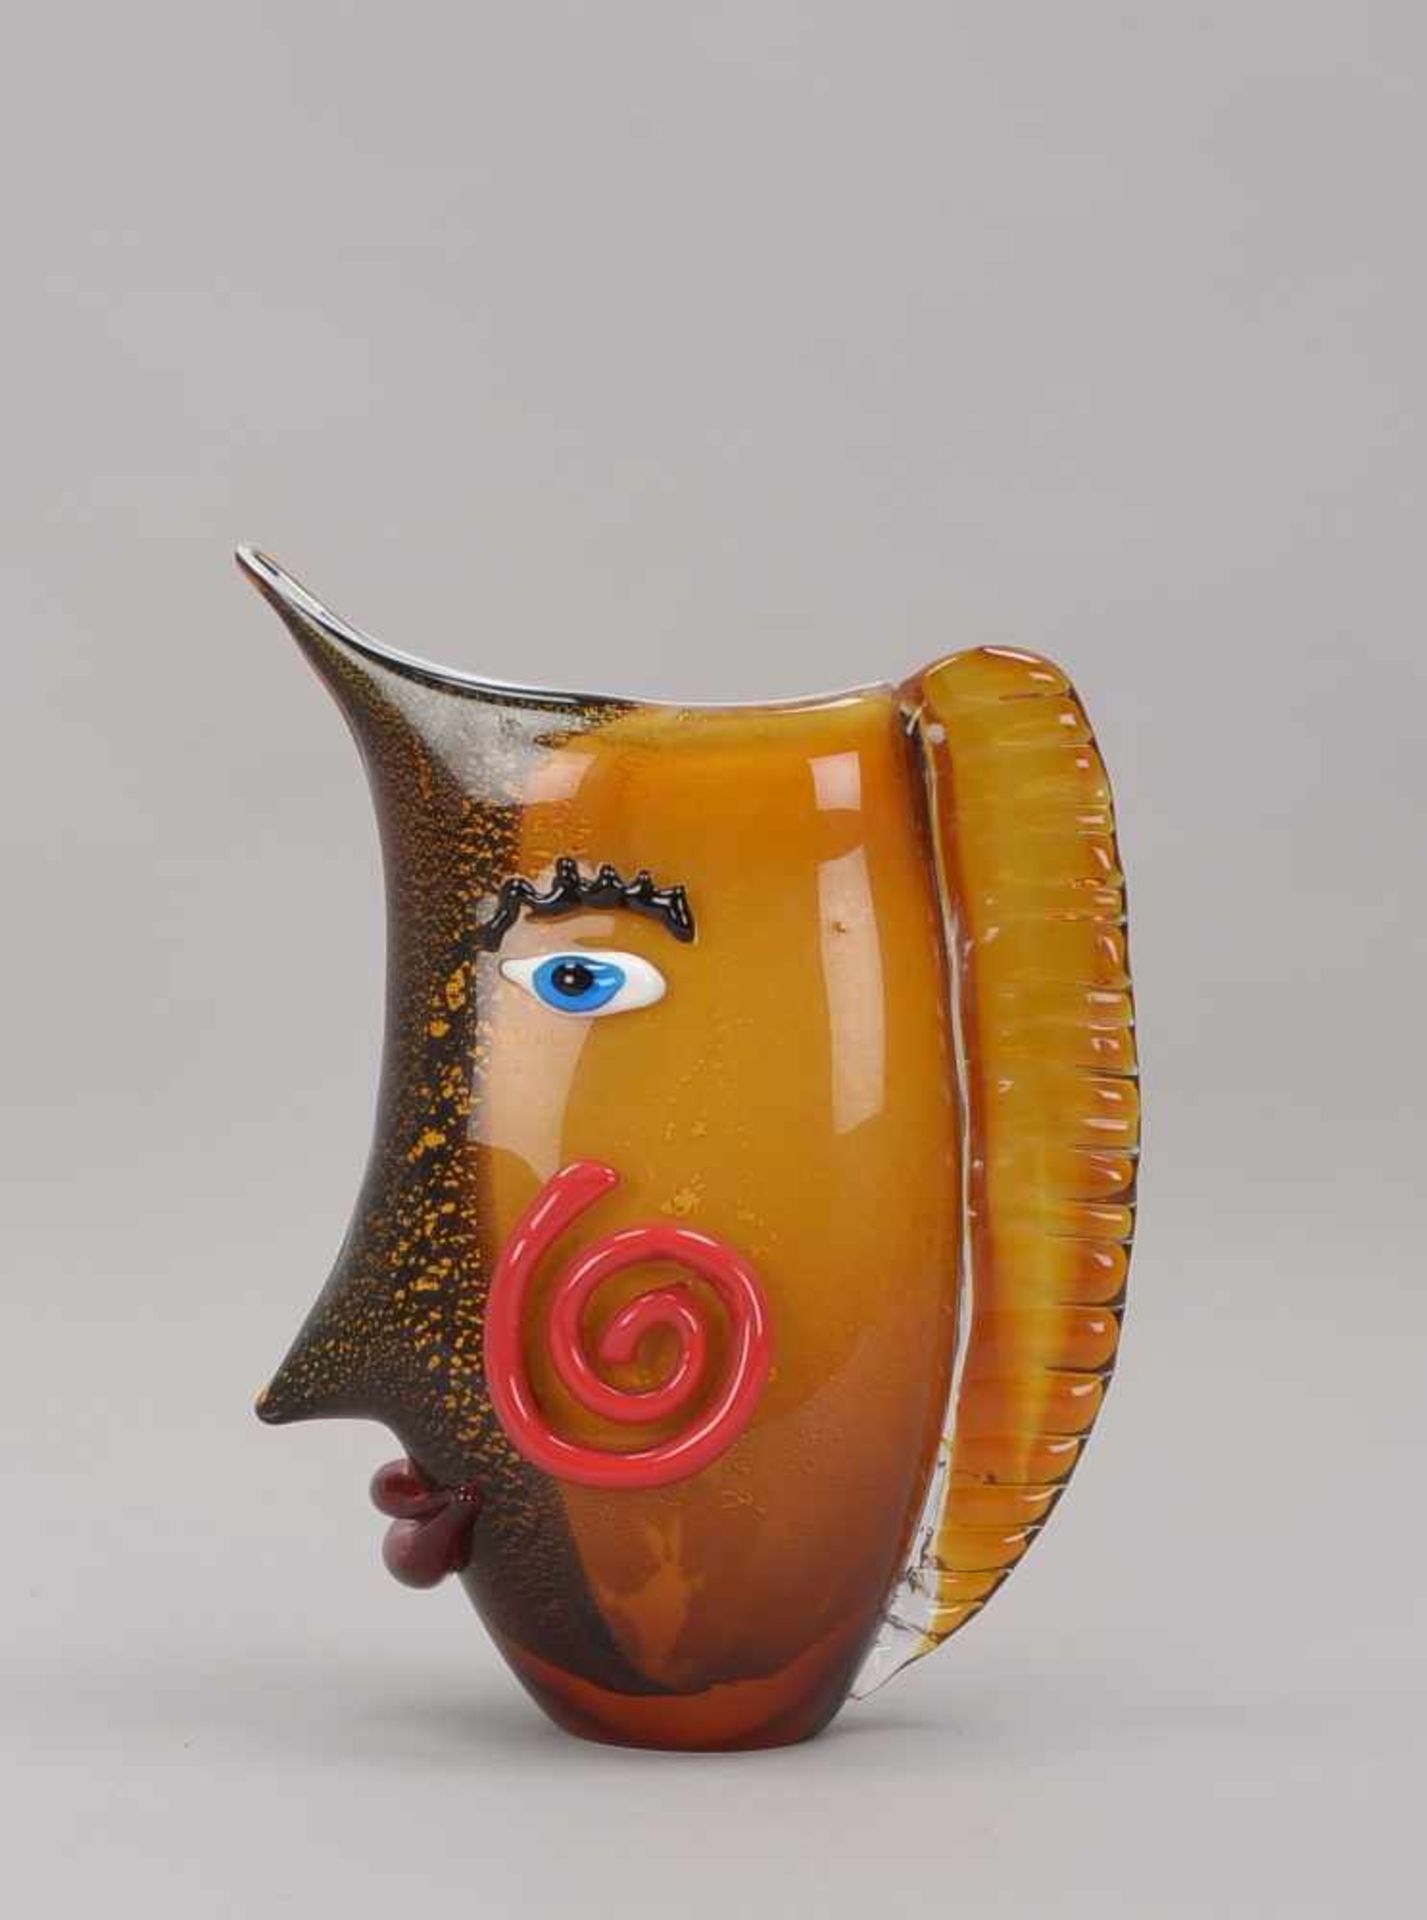 Figürliche Glasvase, 'Gesicht', orange-braunes Glas mit Goldflitter-Einschmelzungen, weißer